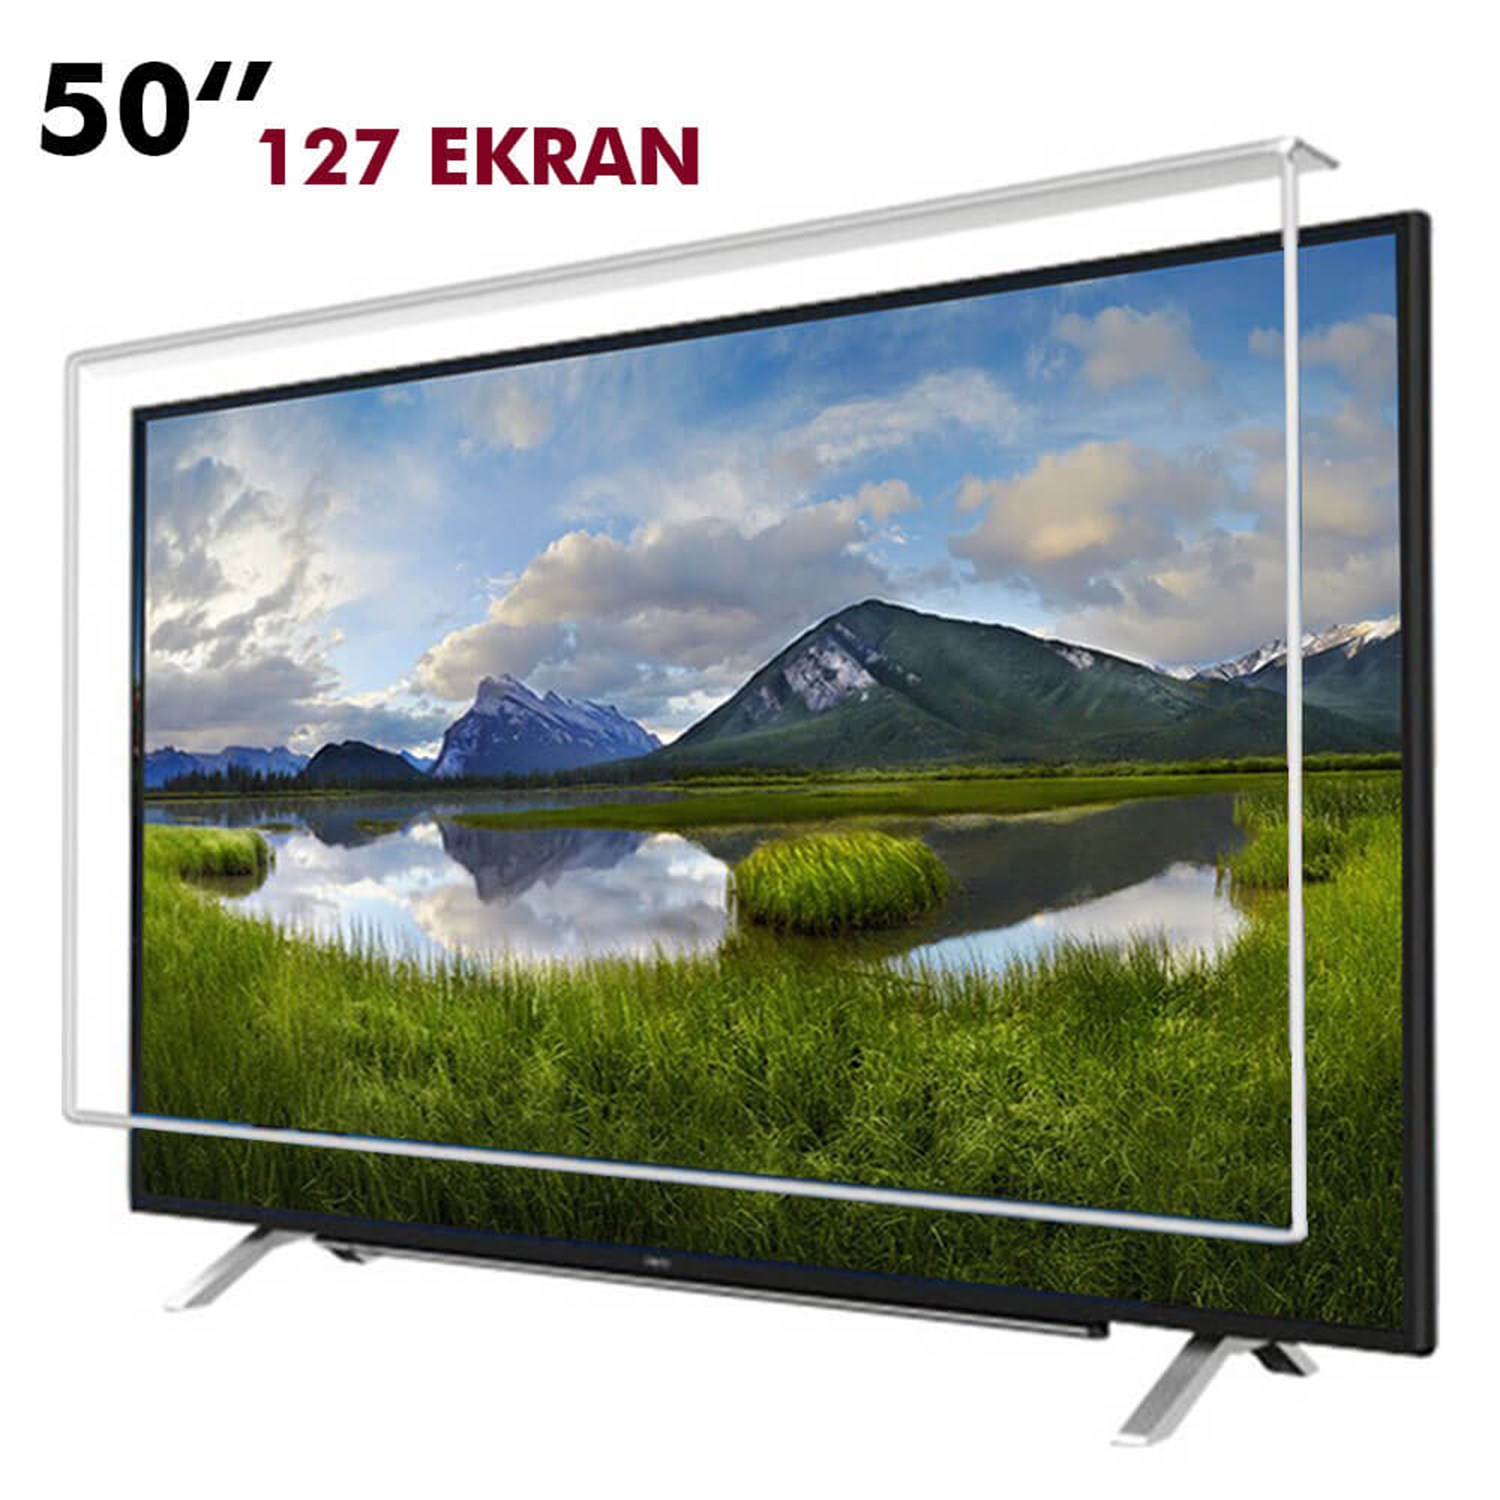 Tv Ekran Koruyucu 127 Ekran(50” inch) | Okularenkkat.com